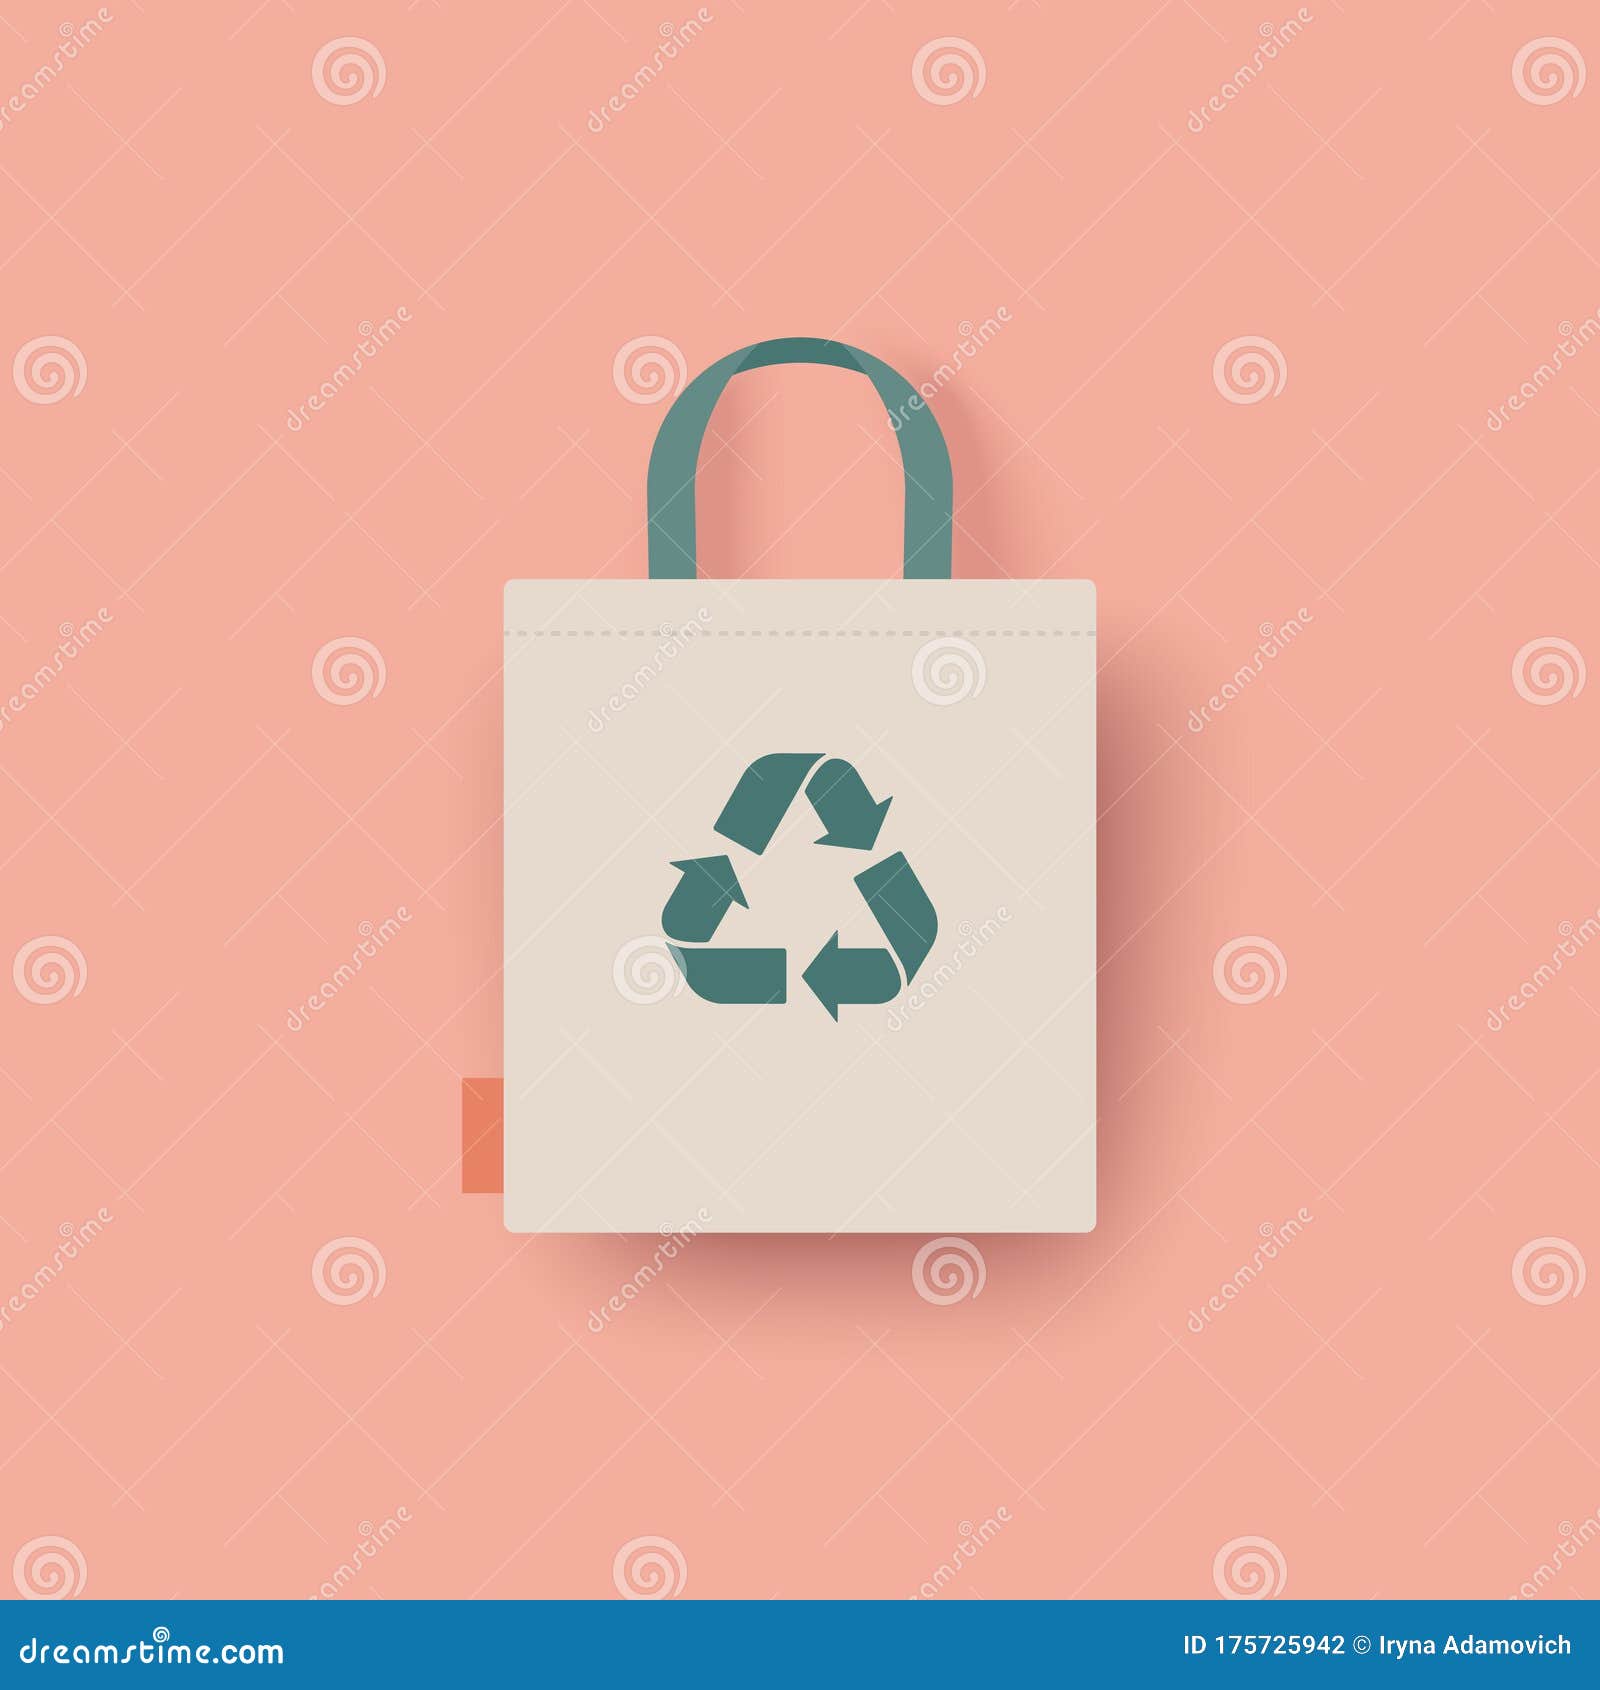 Eco Bag Vector Icon. Cloth Bag Tote Sign. Zero Waste Eco-friendly 